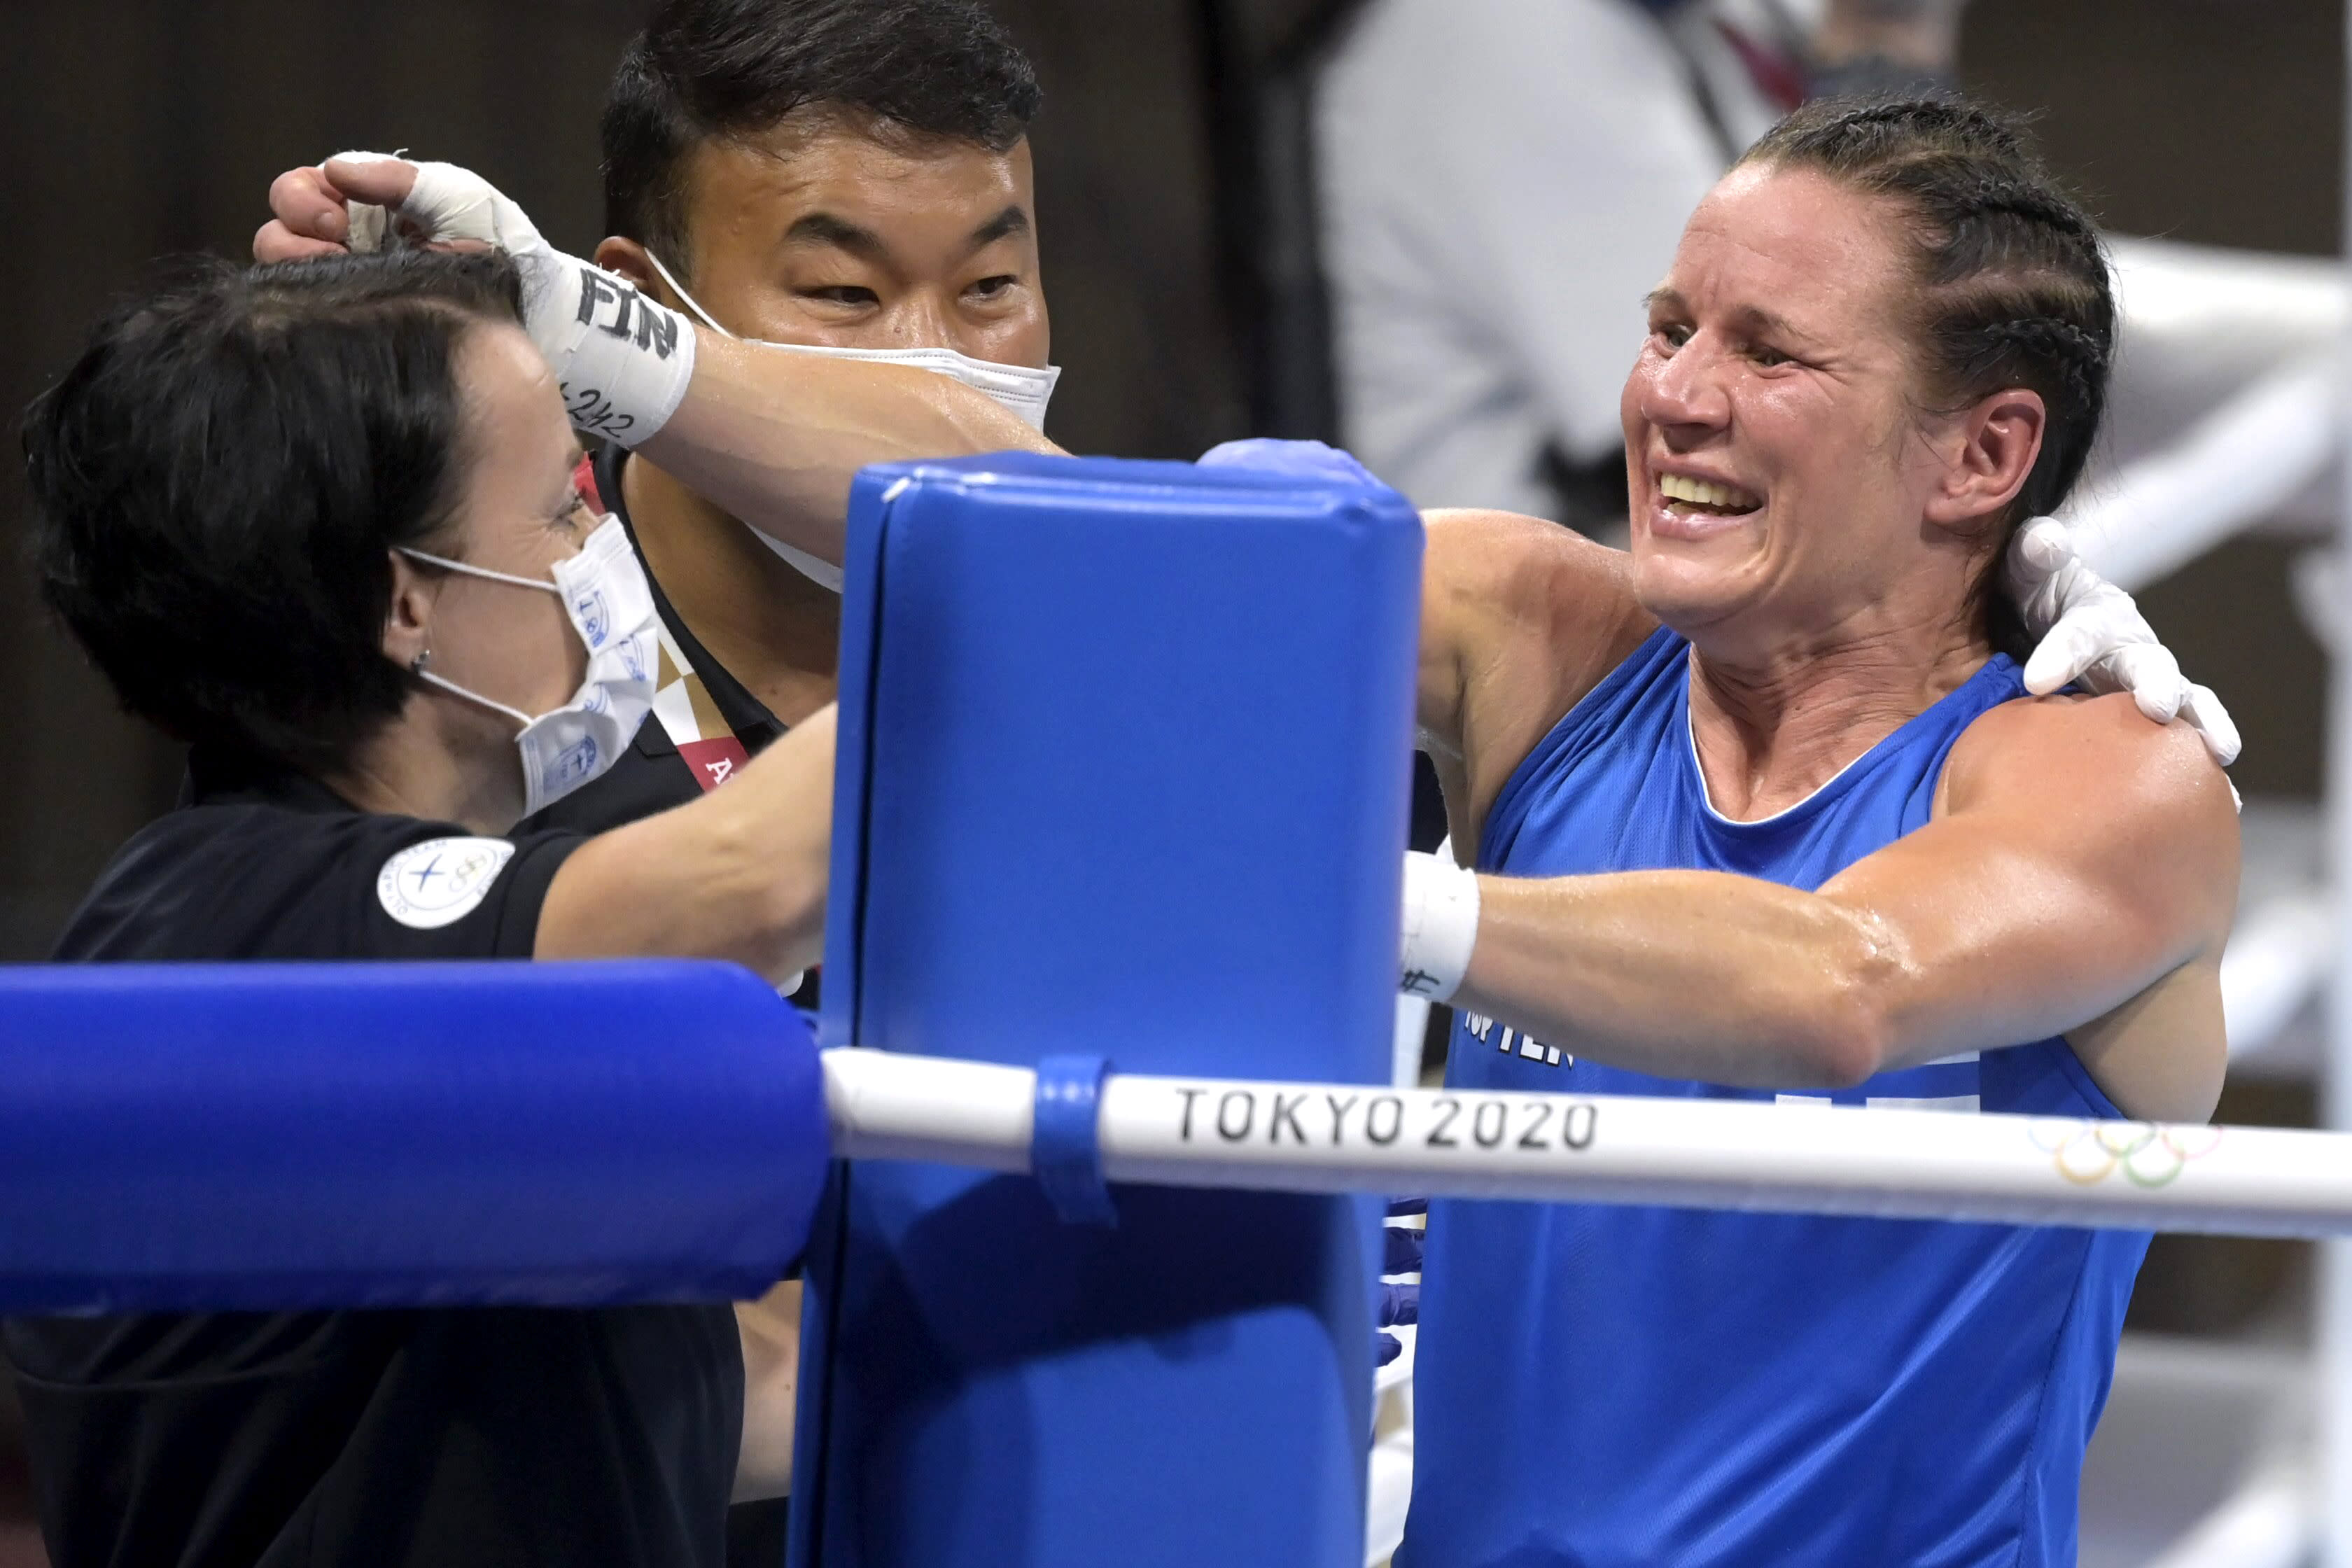 Fighting Finn gewann eine olympische Medaille – schreibt Boxgeschichte